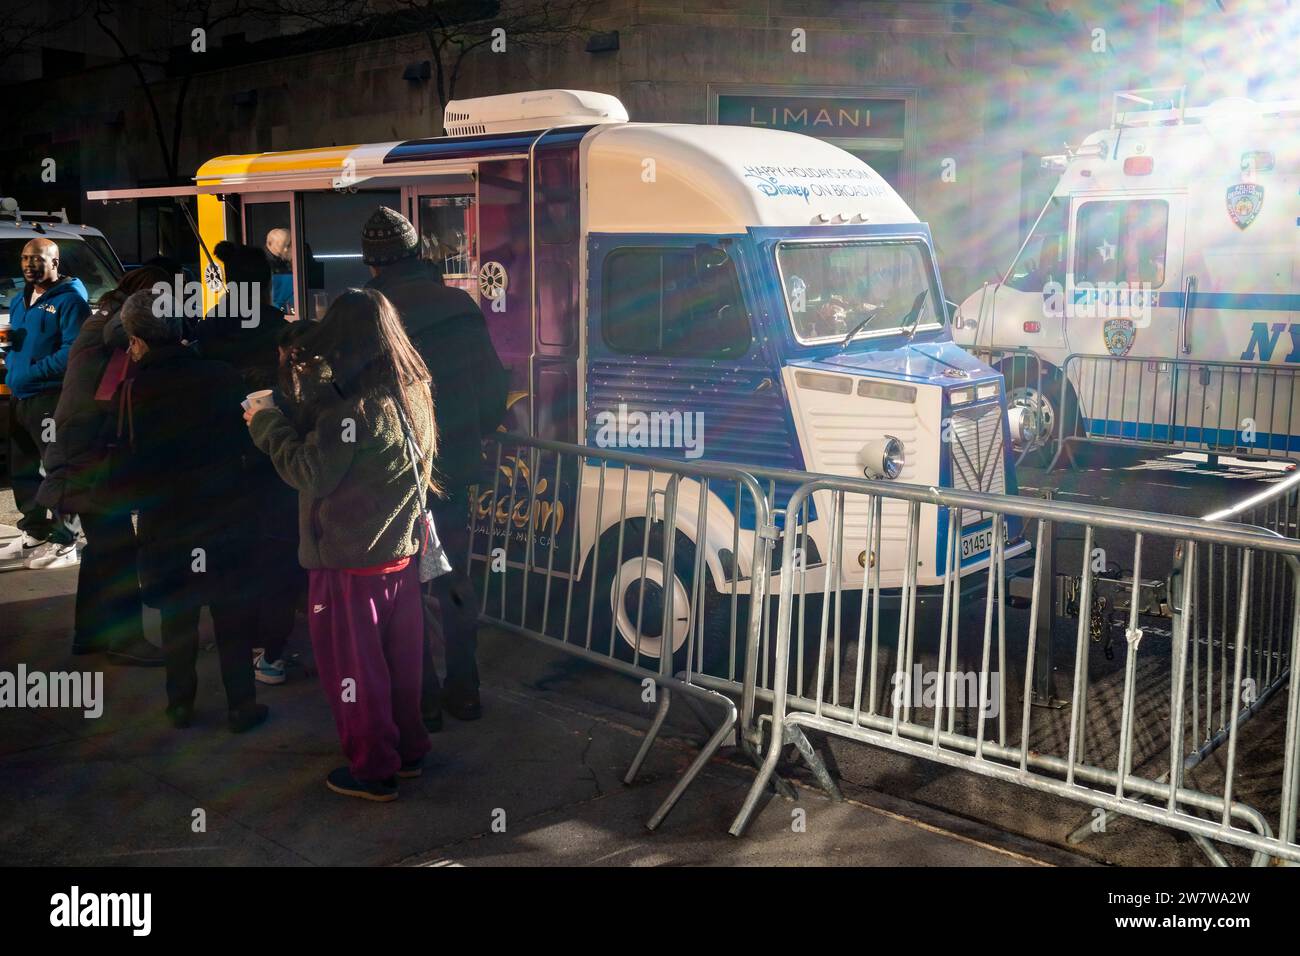 Ein umgestalteter Citron Truck serviert kostenlose Kaffeegetränke an Passanten, mit freundlicher Genehmigung der Walt Disney Co., einer Markenaktivierung für Disney am Broadway, die am Mittwoch, den 20. Dezember 2023 zu sehen ist. (©ÊRichard B. Levine) Stockfoto